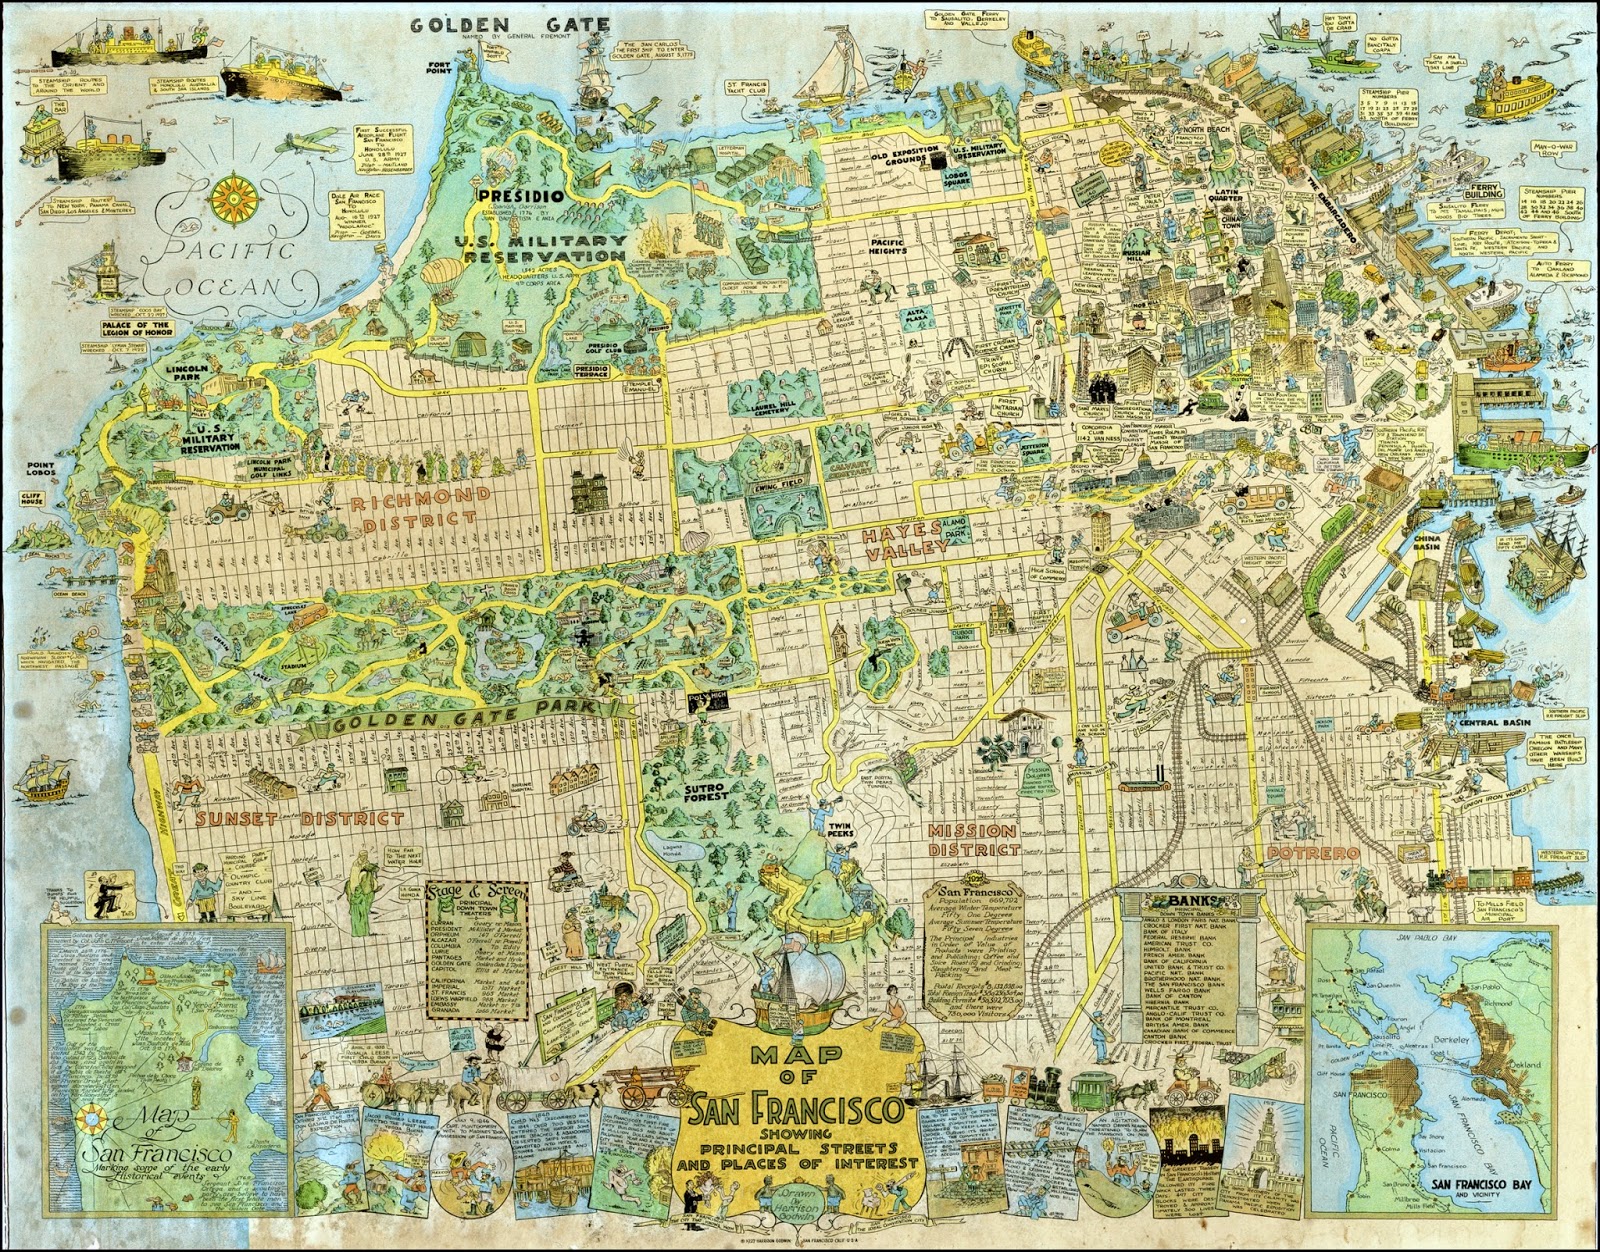 Mapa del dia: Mapa turístic de Sant Francisco de l’any 1927